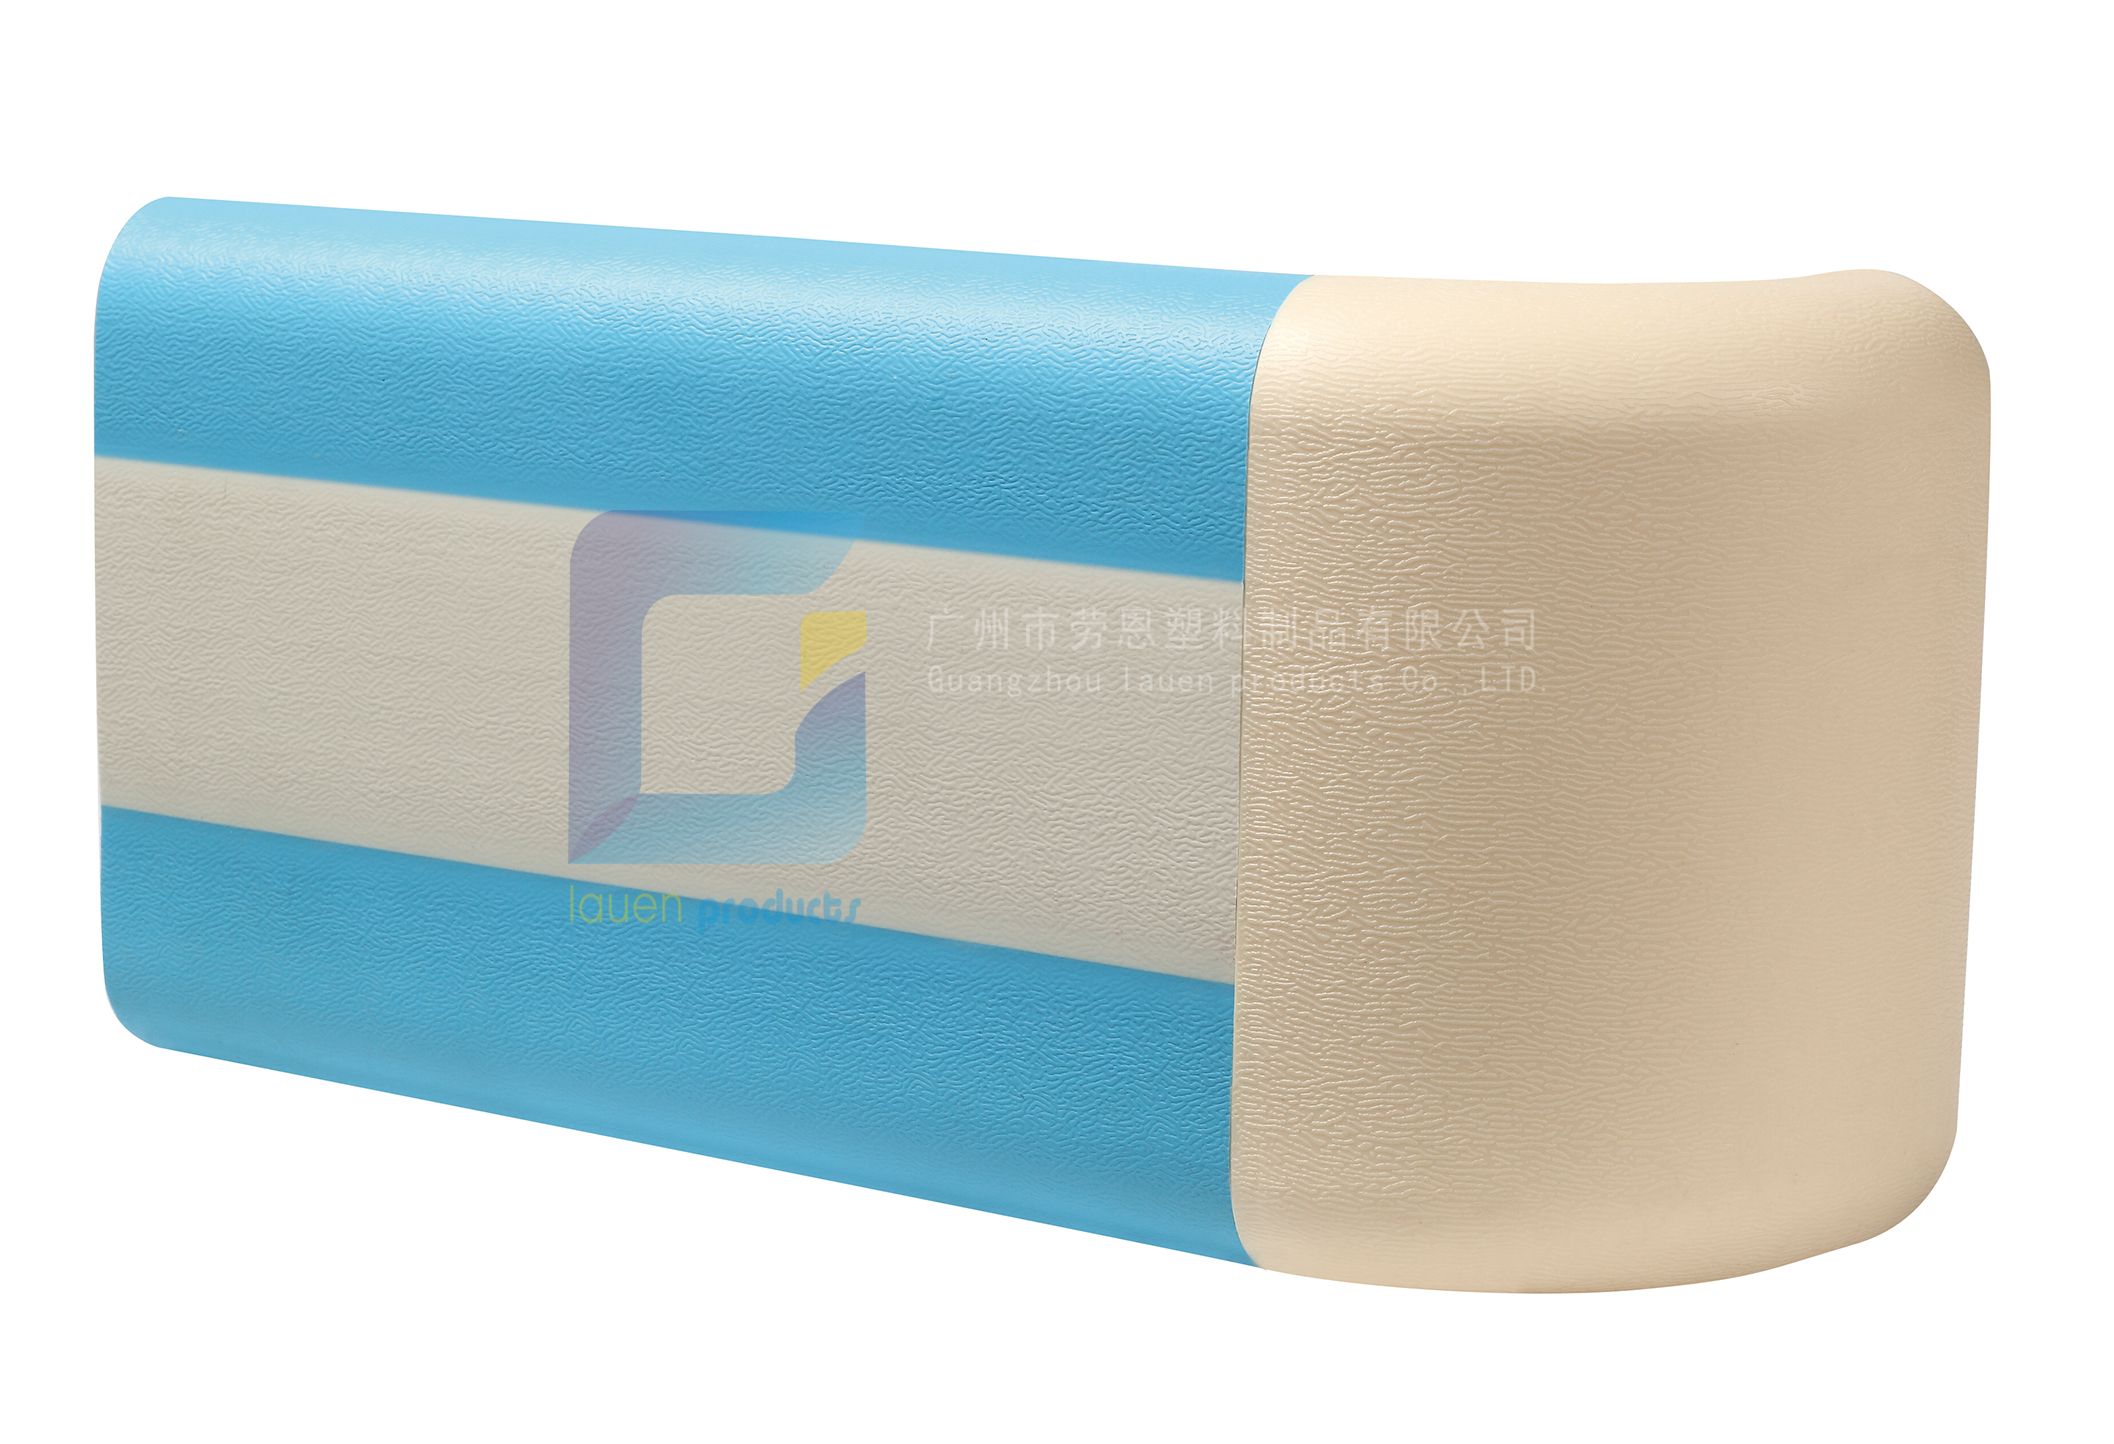 醫用防撞扶手LE-140天藍色雙條紋-勞恩塑料制品